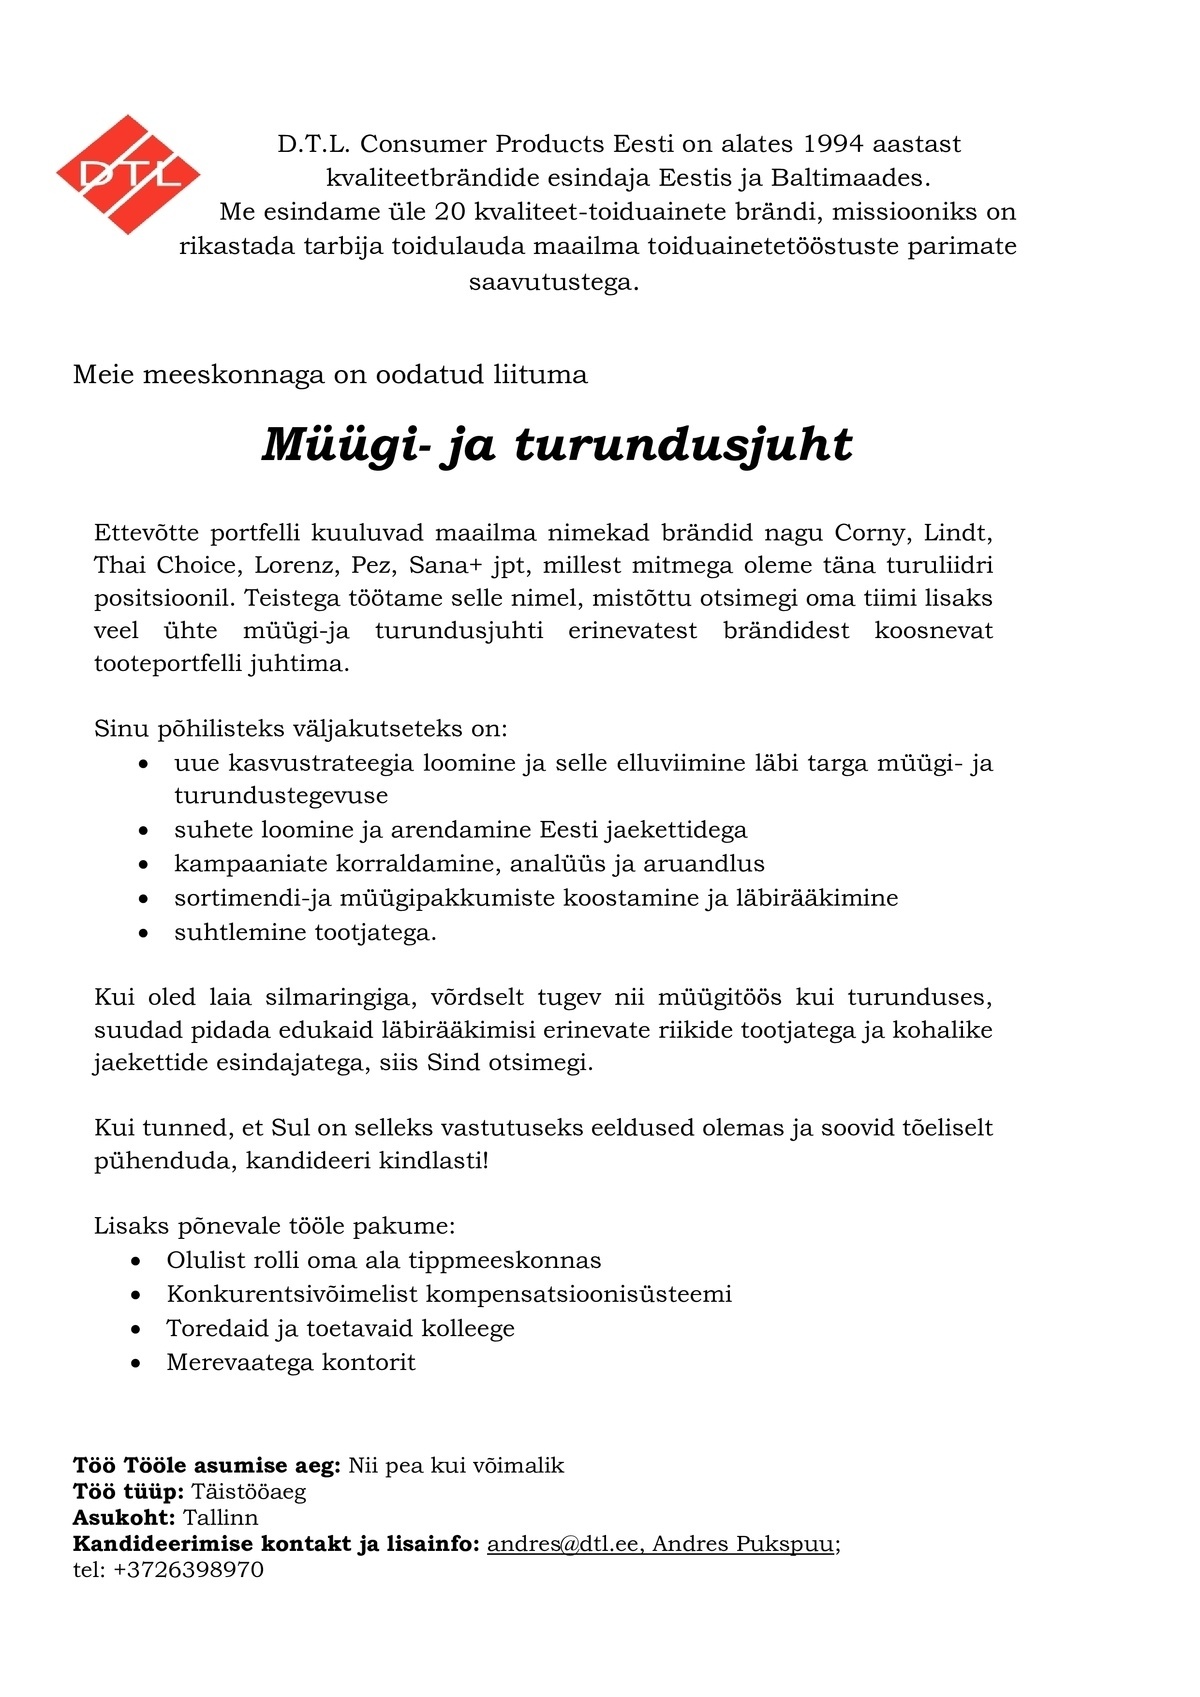 D.T.L. Consumer Products Eesti AS Müügi-ja turundusjuht